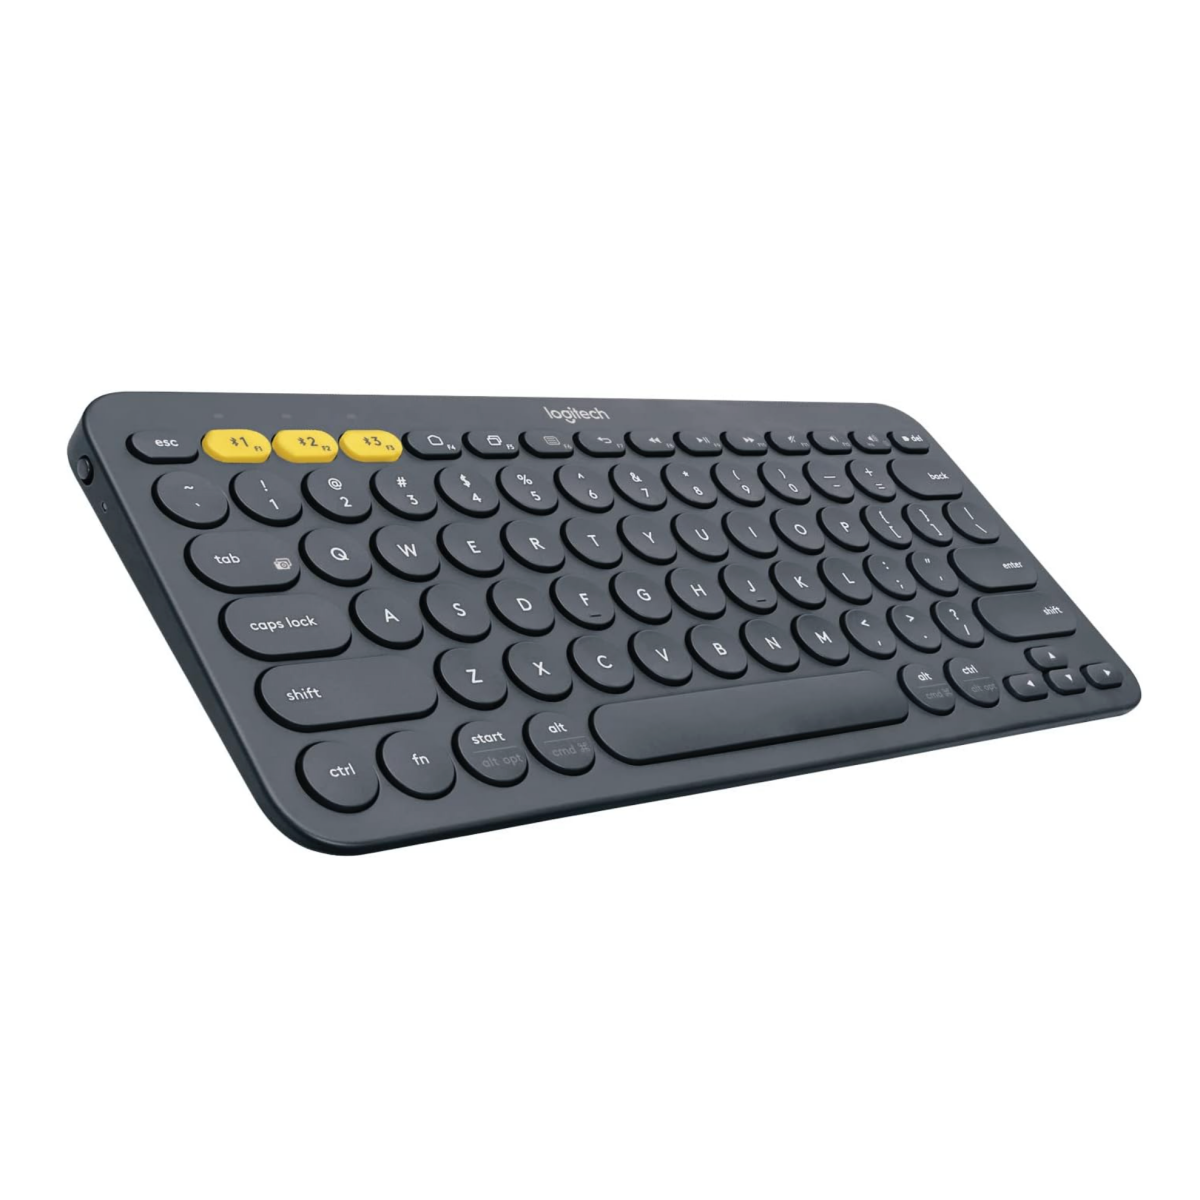 A Logitech K380 wireless keyboard